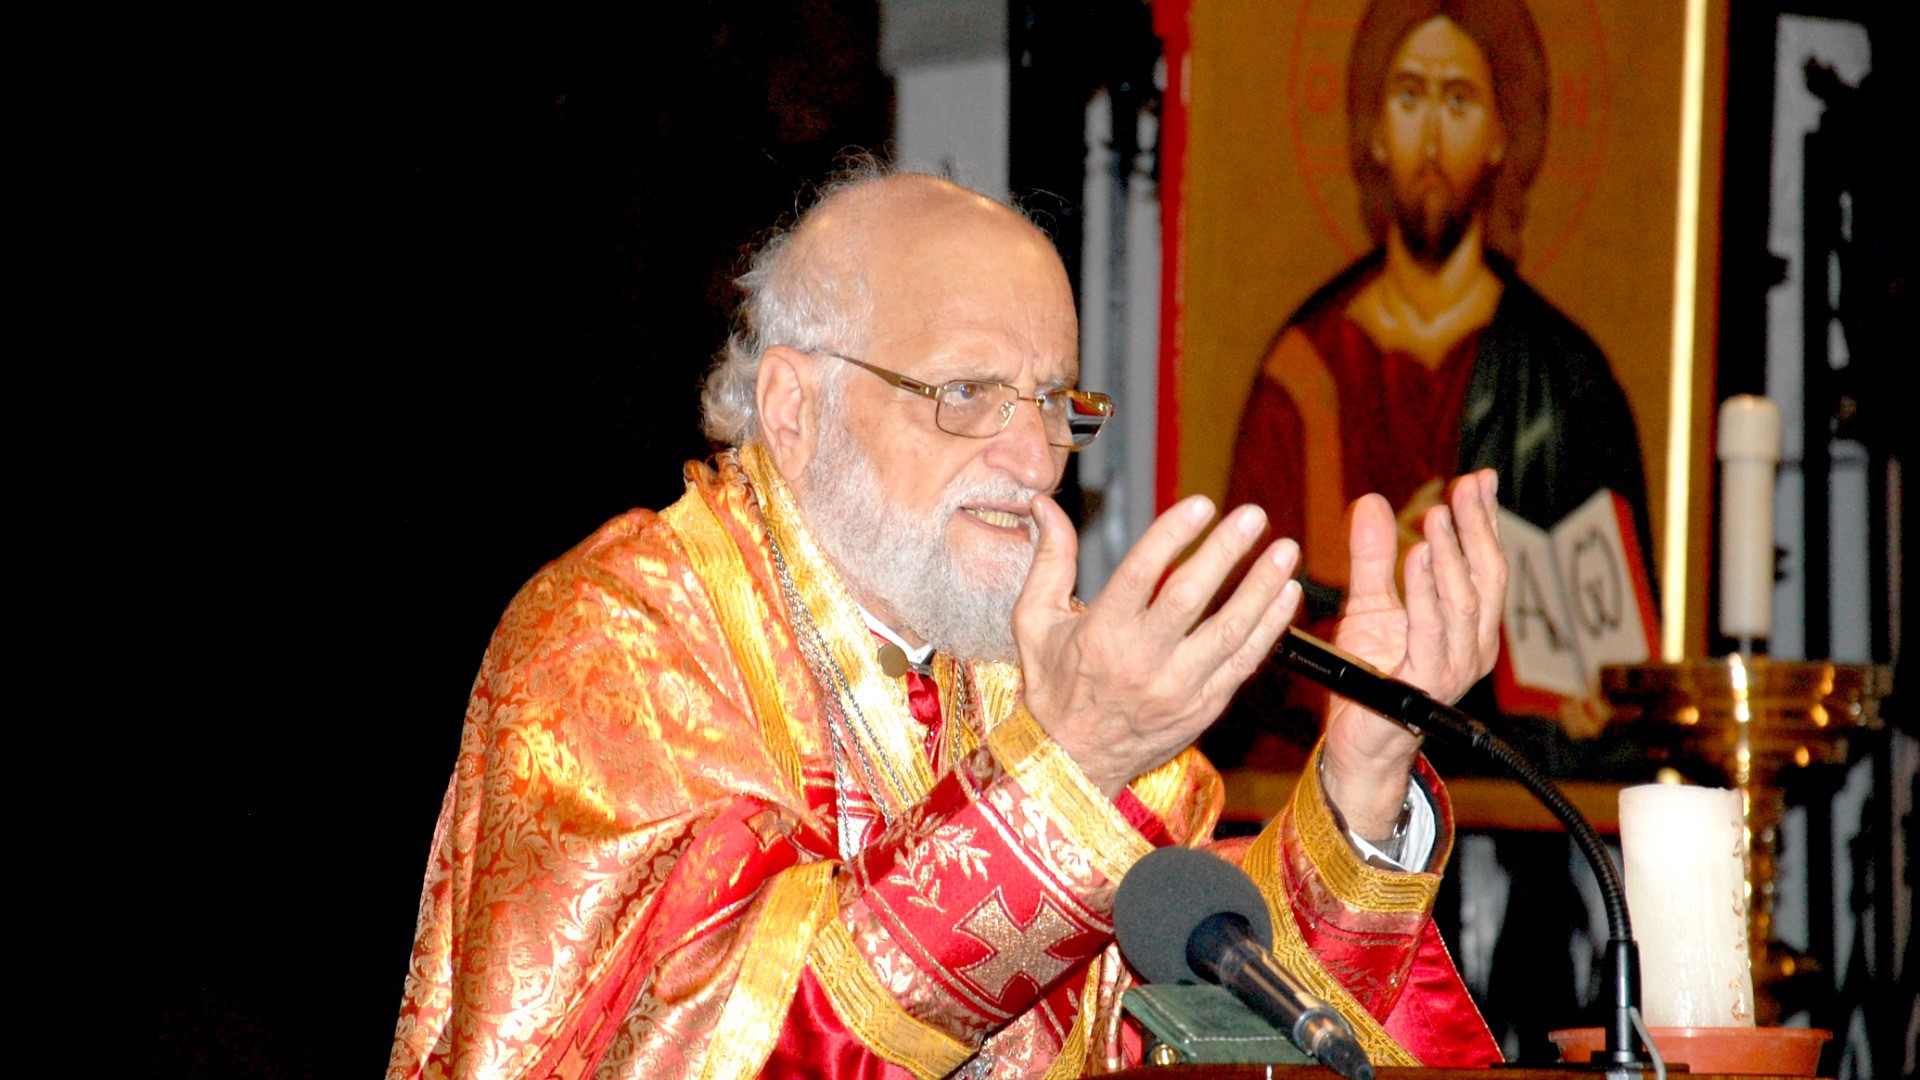 Syrie Patriarche Grégoire III Laham, chef de l'Eglise grecque-melkite catholique (Photo: Jacques Berset)
